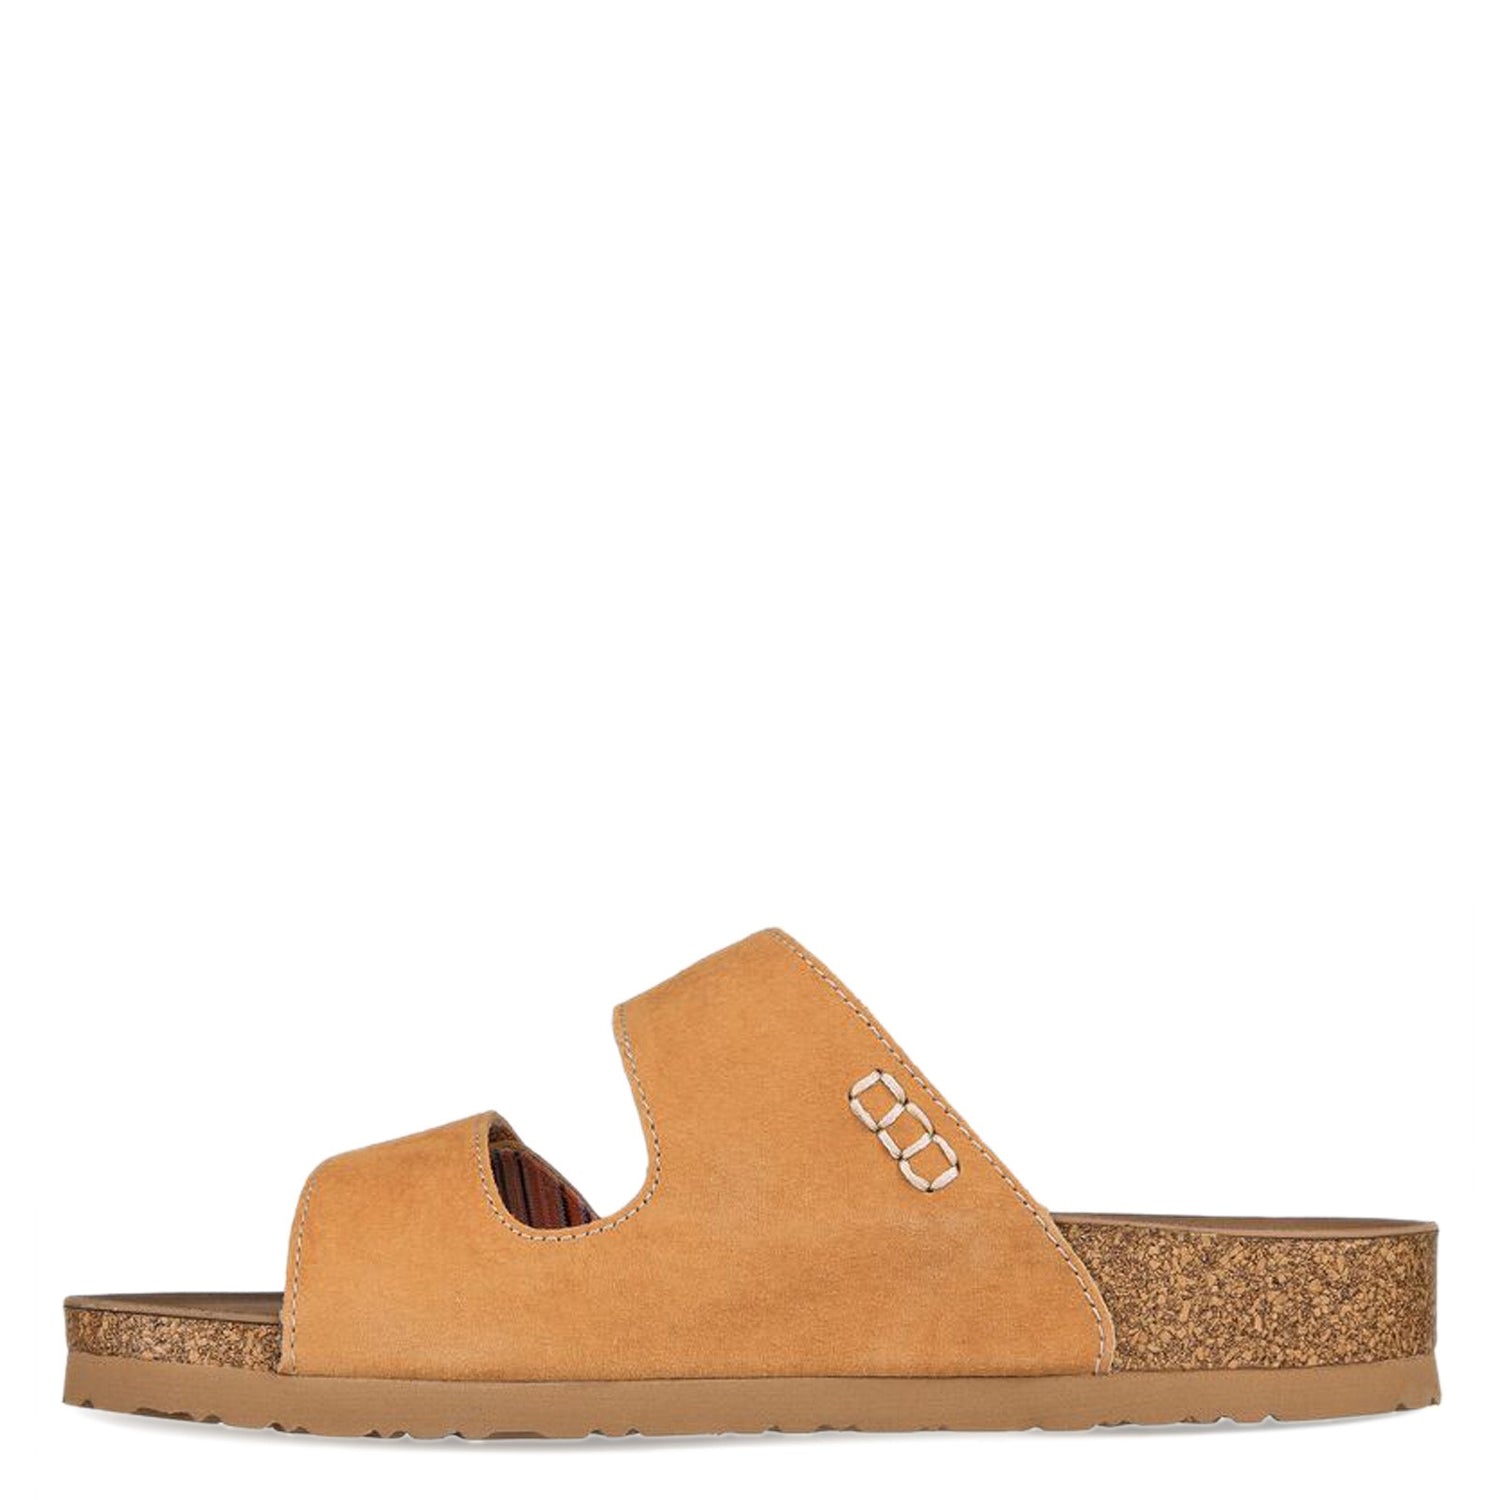 Peltz Shoes  Women's Skechers Arch Fit Granola - Desert Posy Sandal Tan 163319-TAN